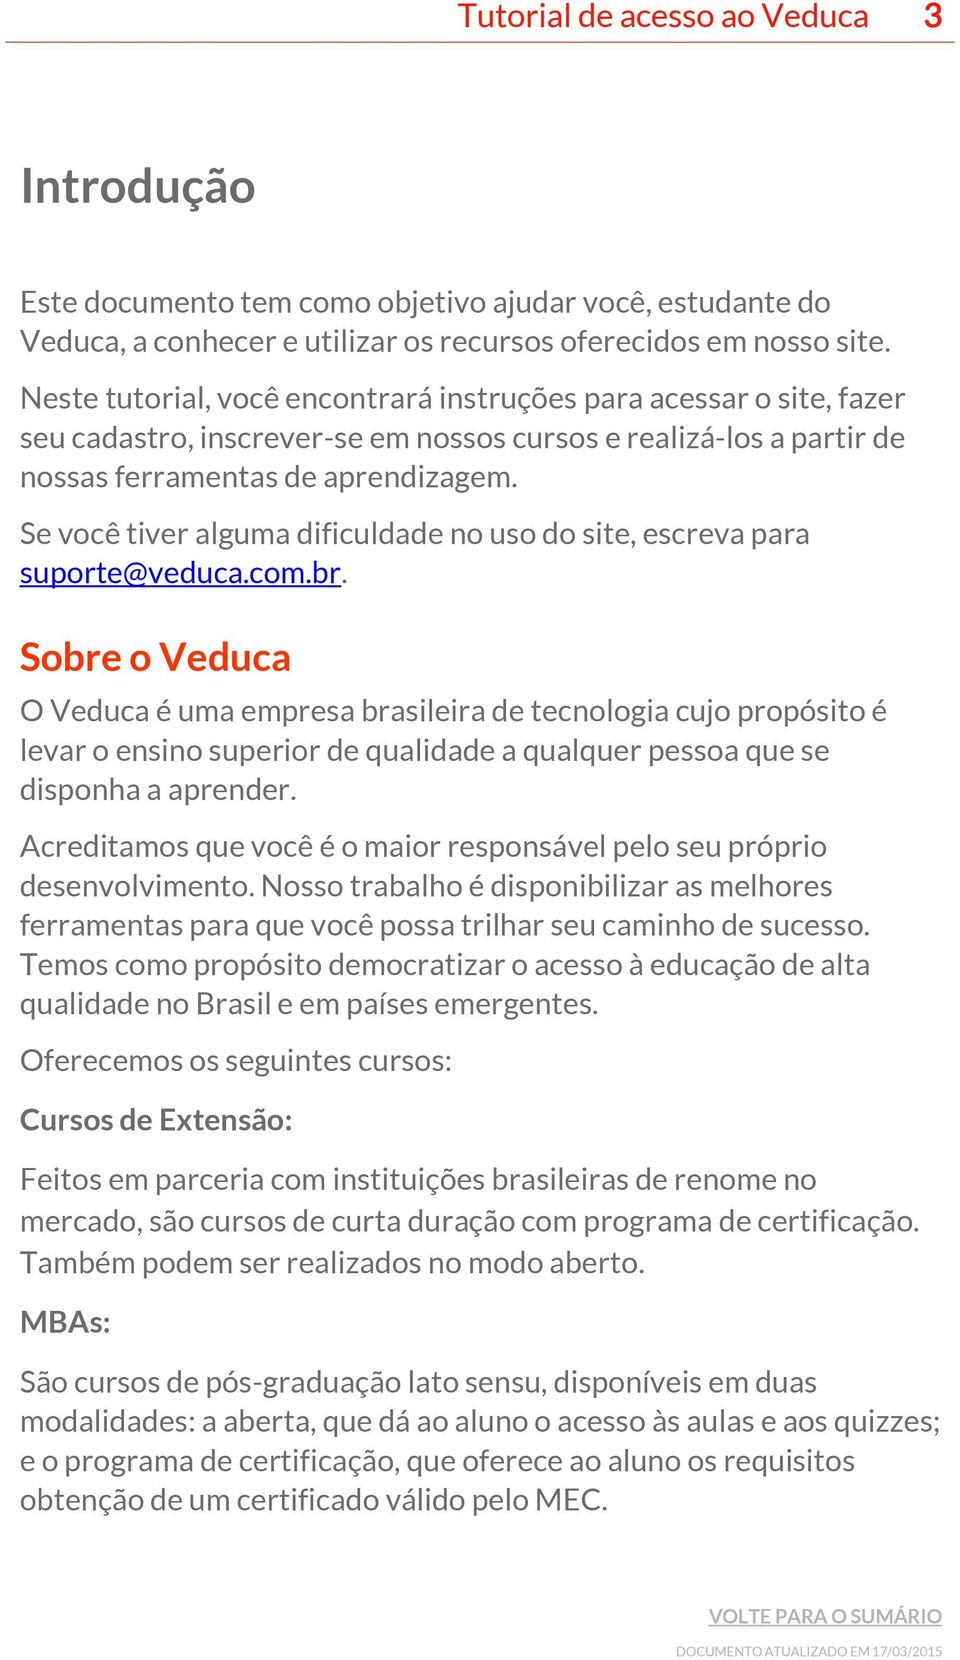 Se você tiver alguma dificuldade no uso do site, escreva para suporte@veduca.com.br.